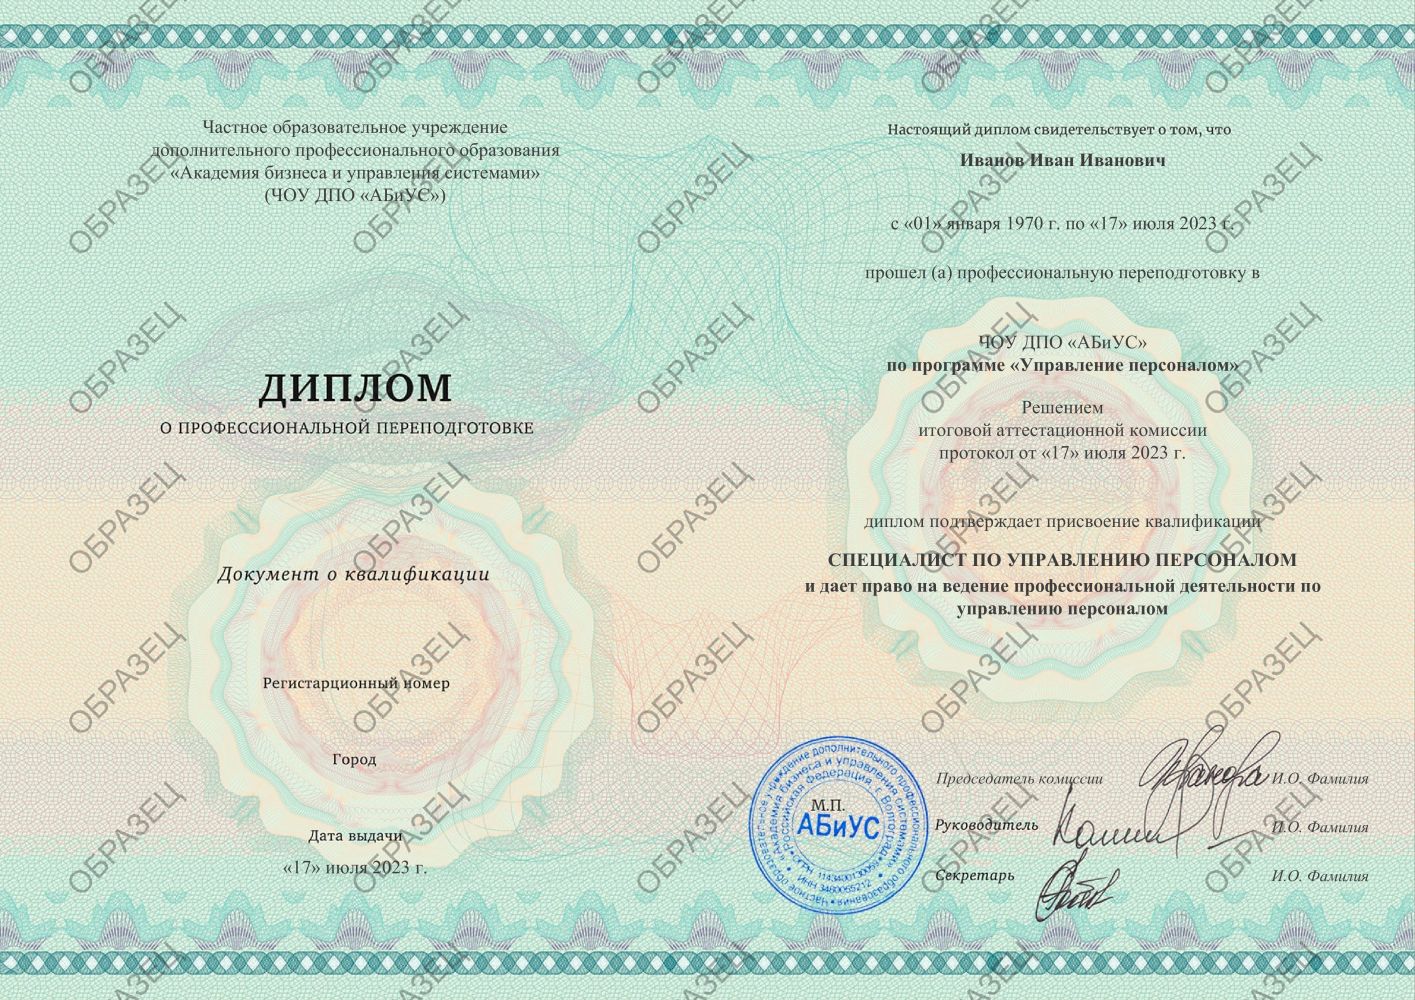 Диплом Управление персоналом 372 часа 10625 руб.